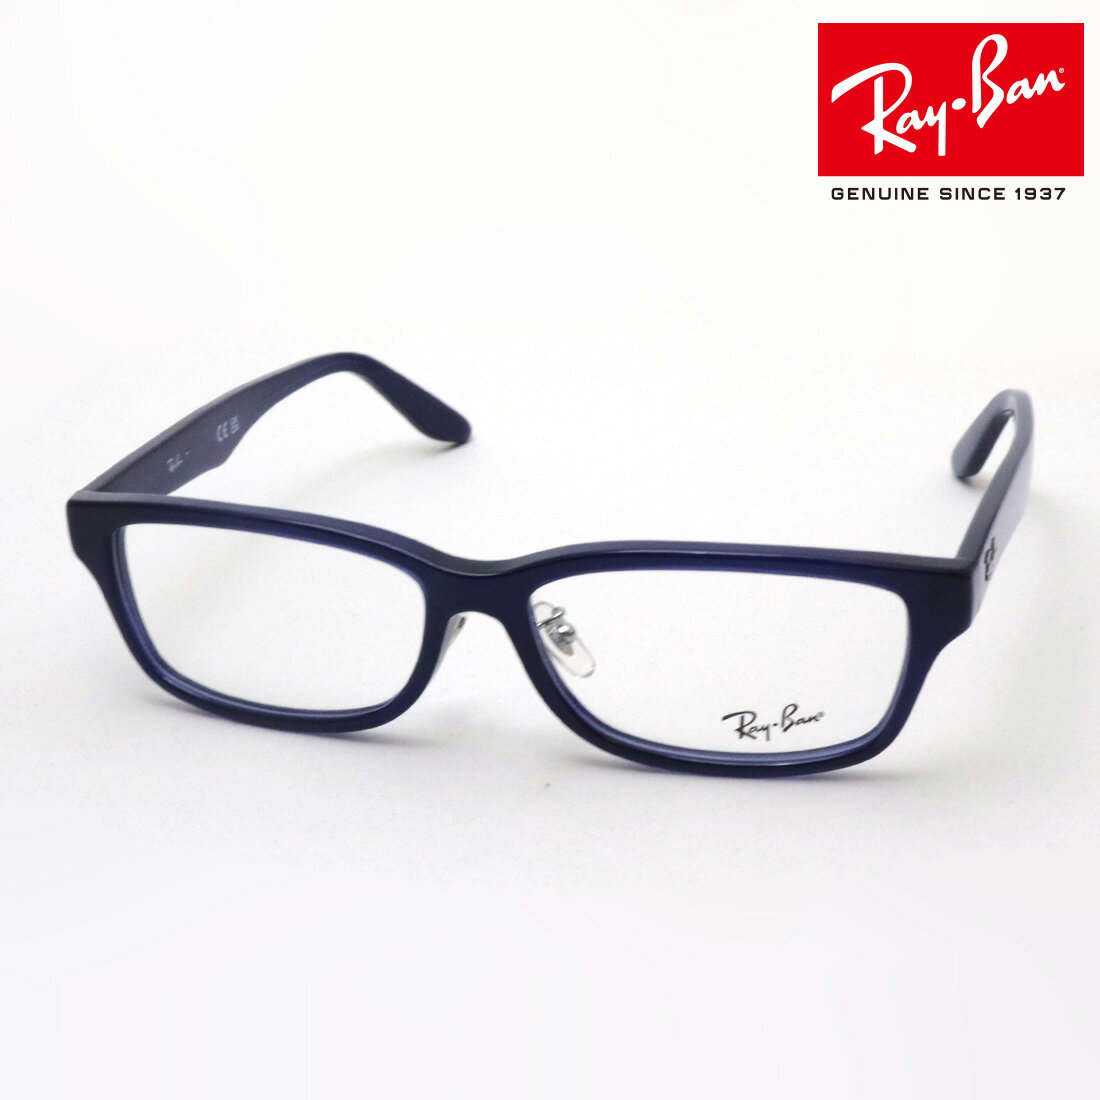 レイバン メガネ メンズ 正規レイバン日本最大級の品揃え レイバン メガネ フレーム Ray-Ban RX5408D 5986 伊達メガネ 度付き ブルーライト カット 眼鏡 RayBan スクエア ブルー系